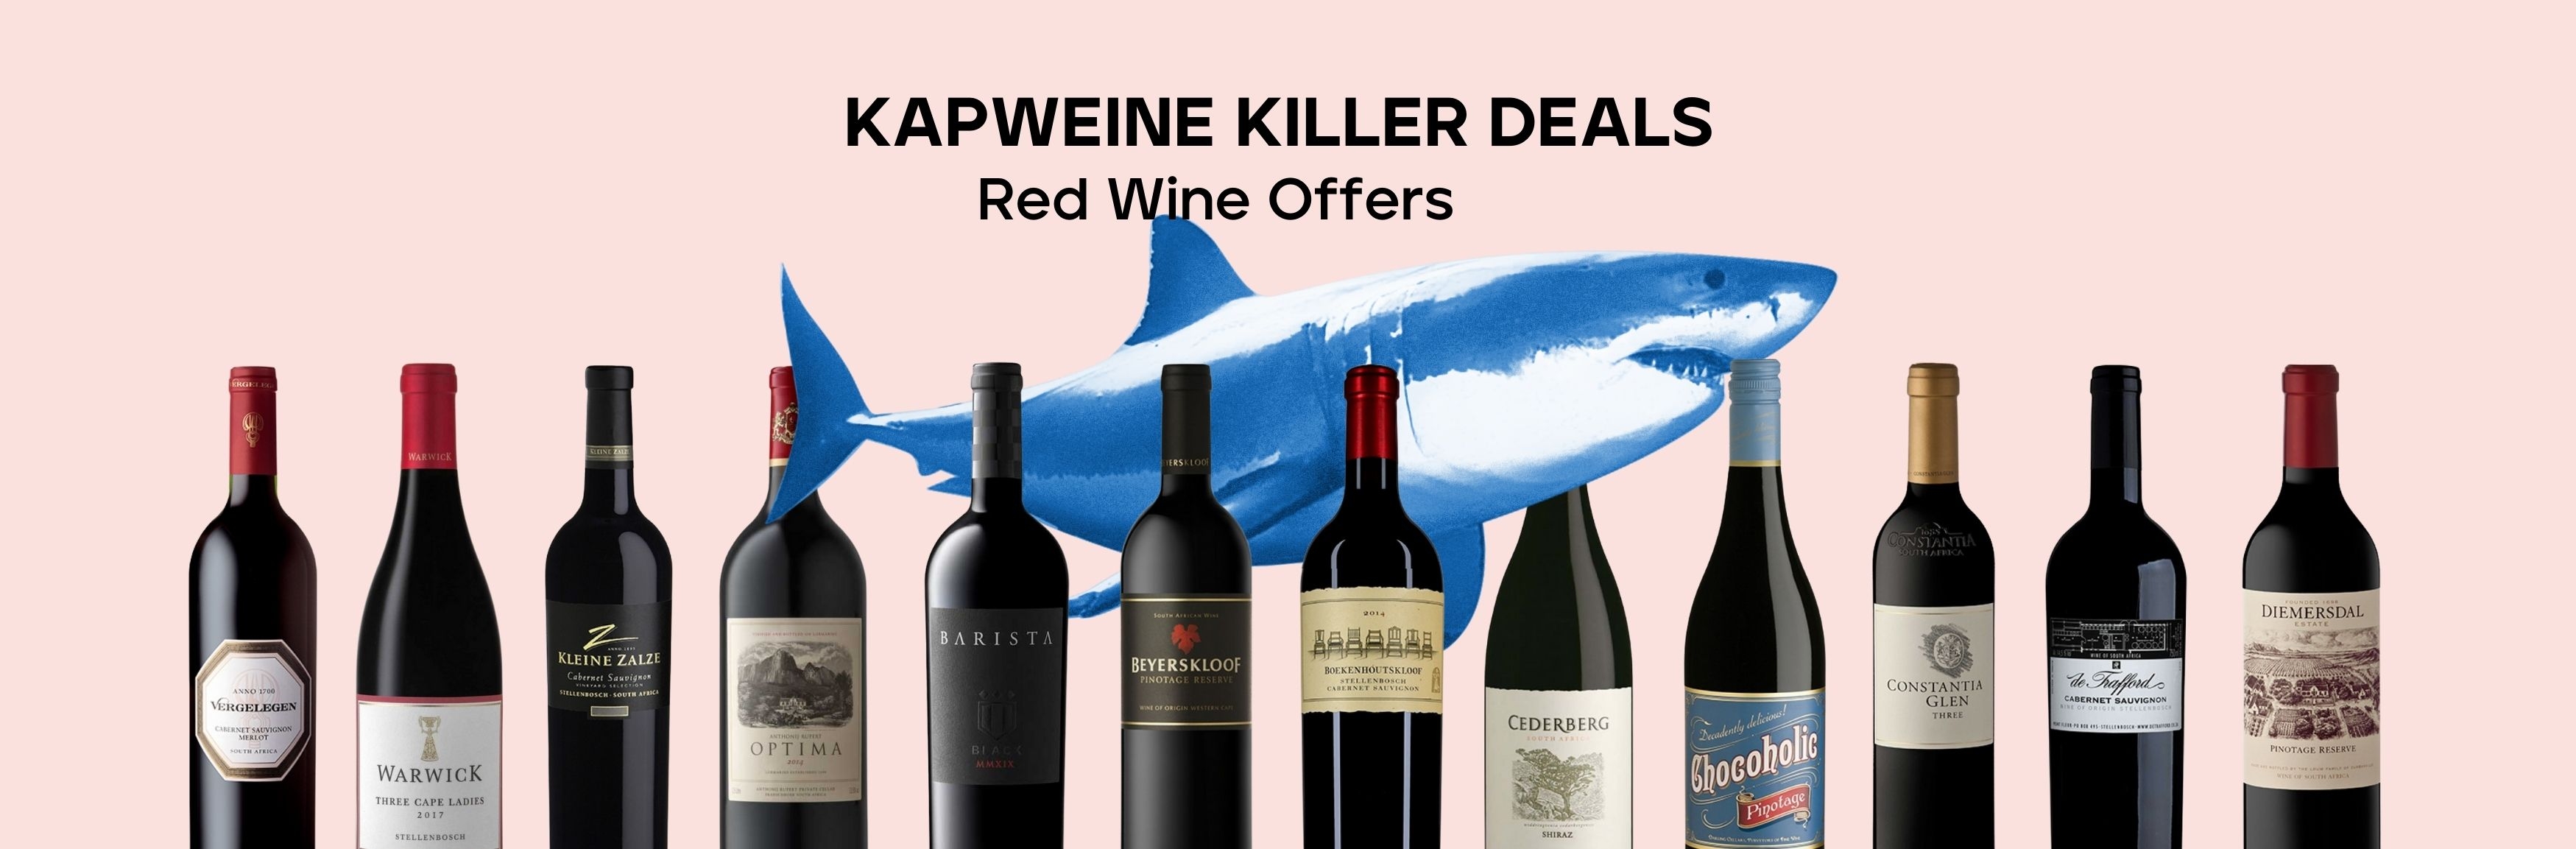 Killer Deal Rot Wein